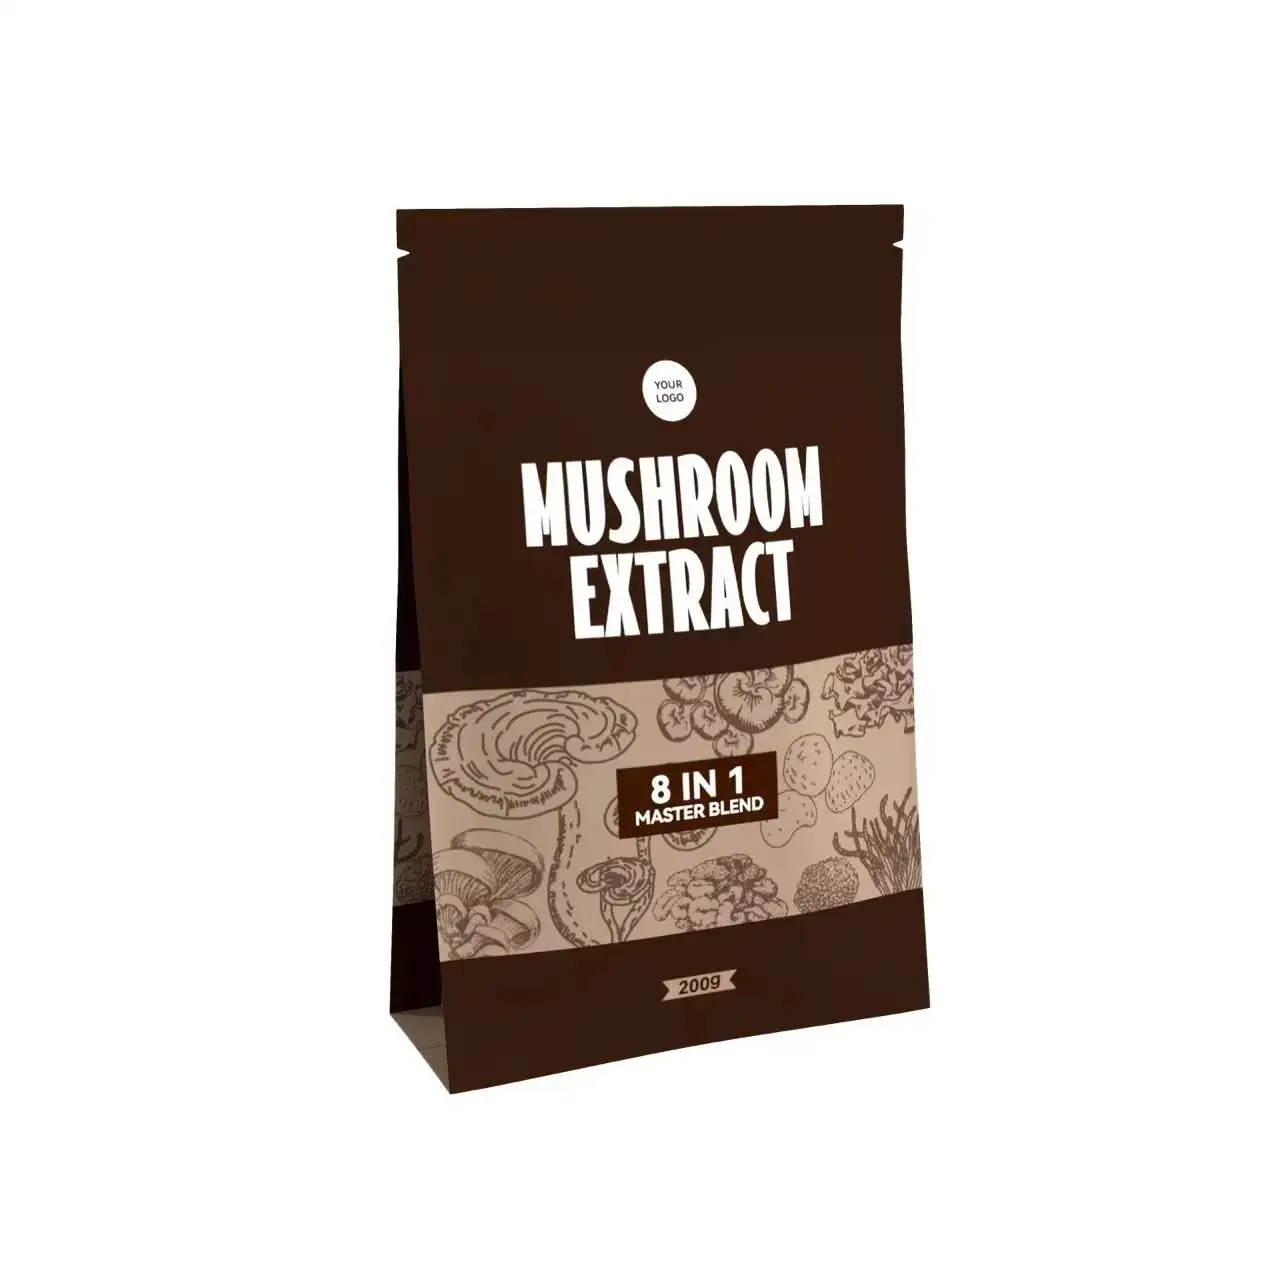 OEM Label pribadi kopi instan sehat ekstrak Jamur Reishi organik kopi instan hitam Herbal instan